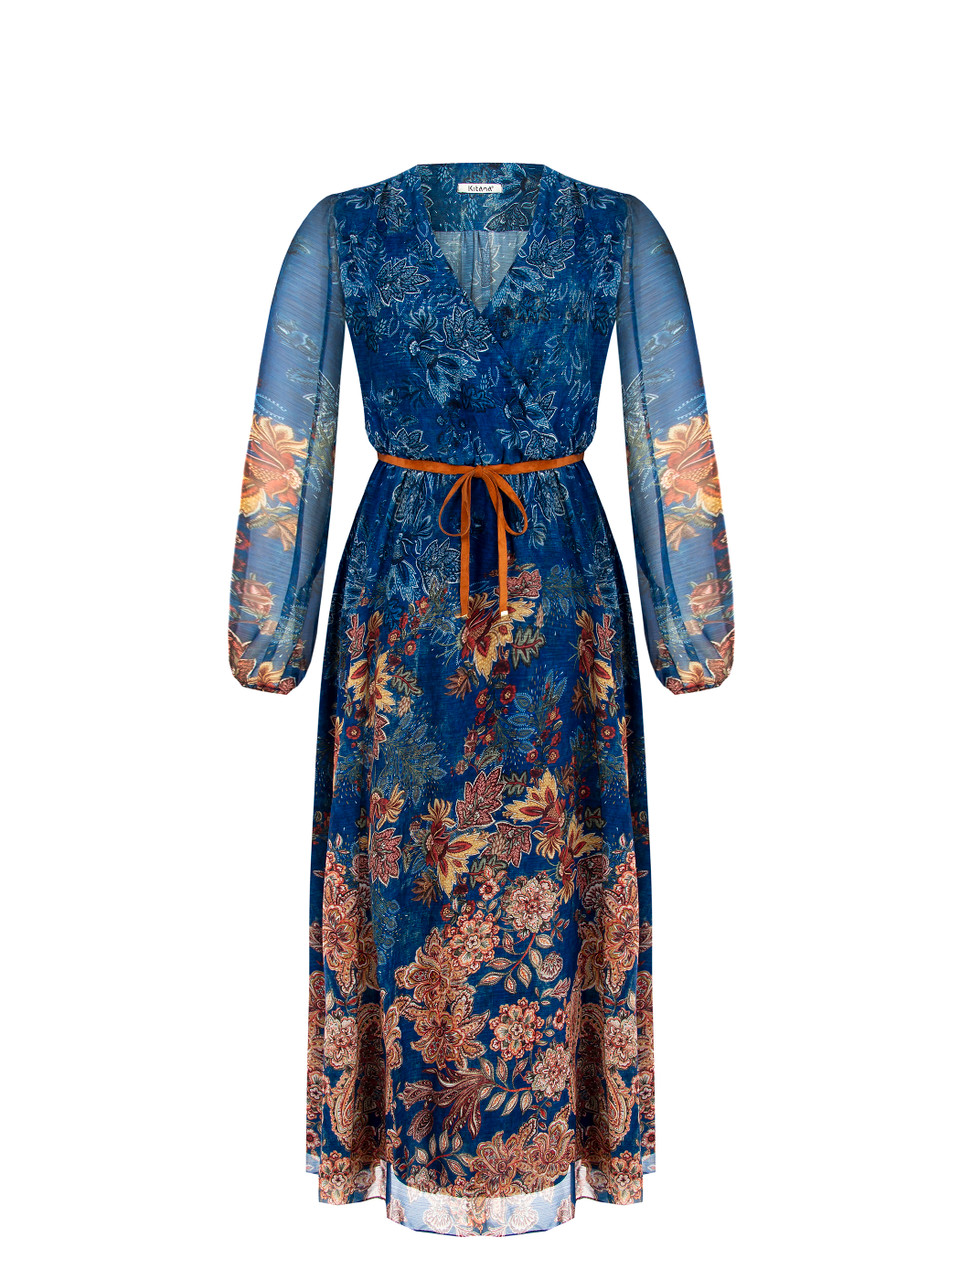 Prachtige lange kobalt blauwe jurk met cappucino kleurig motief onderaan